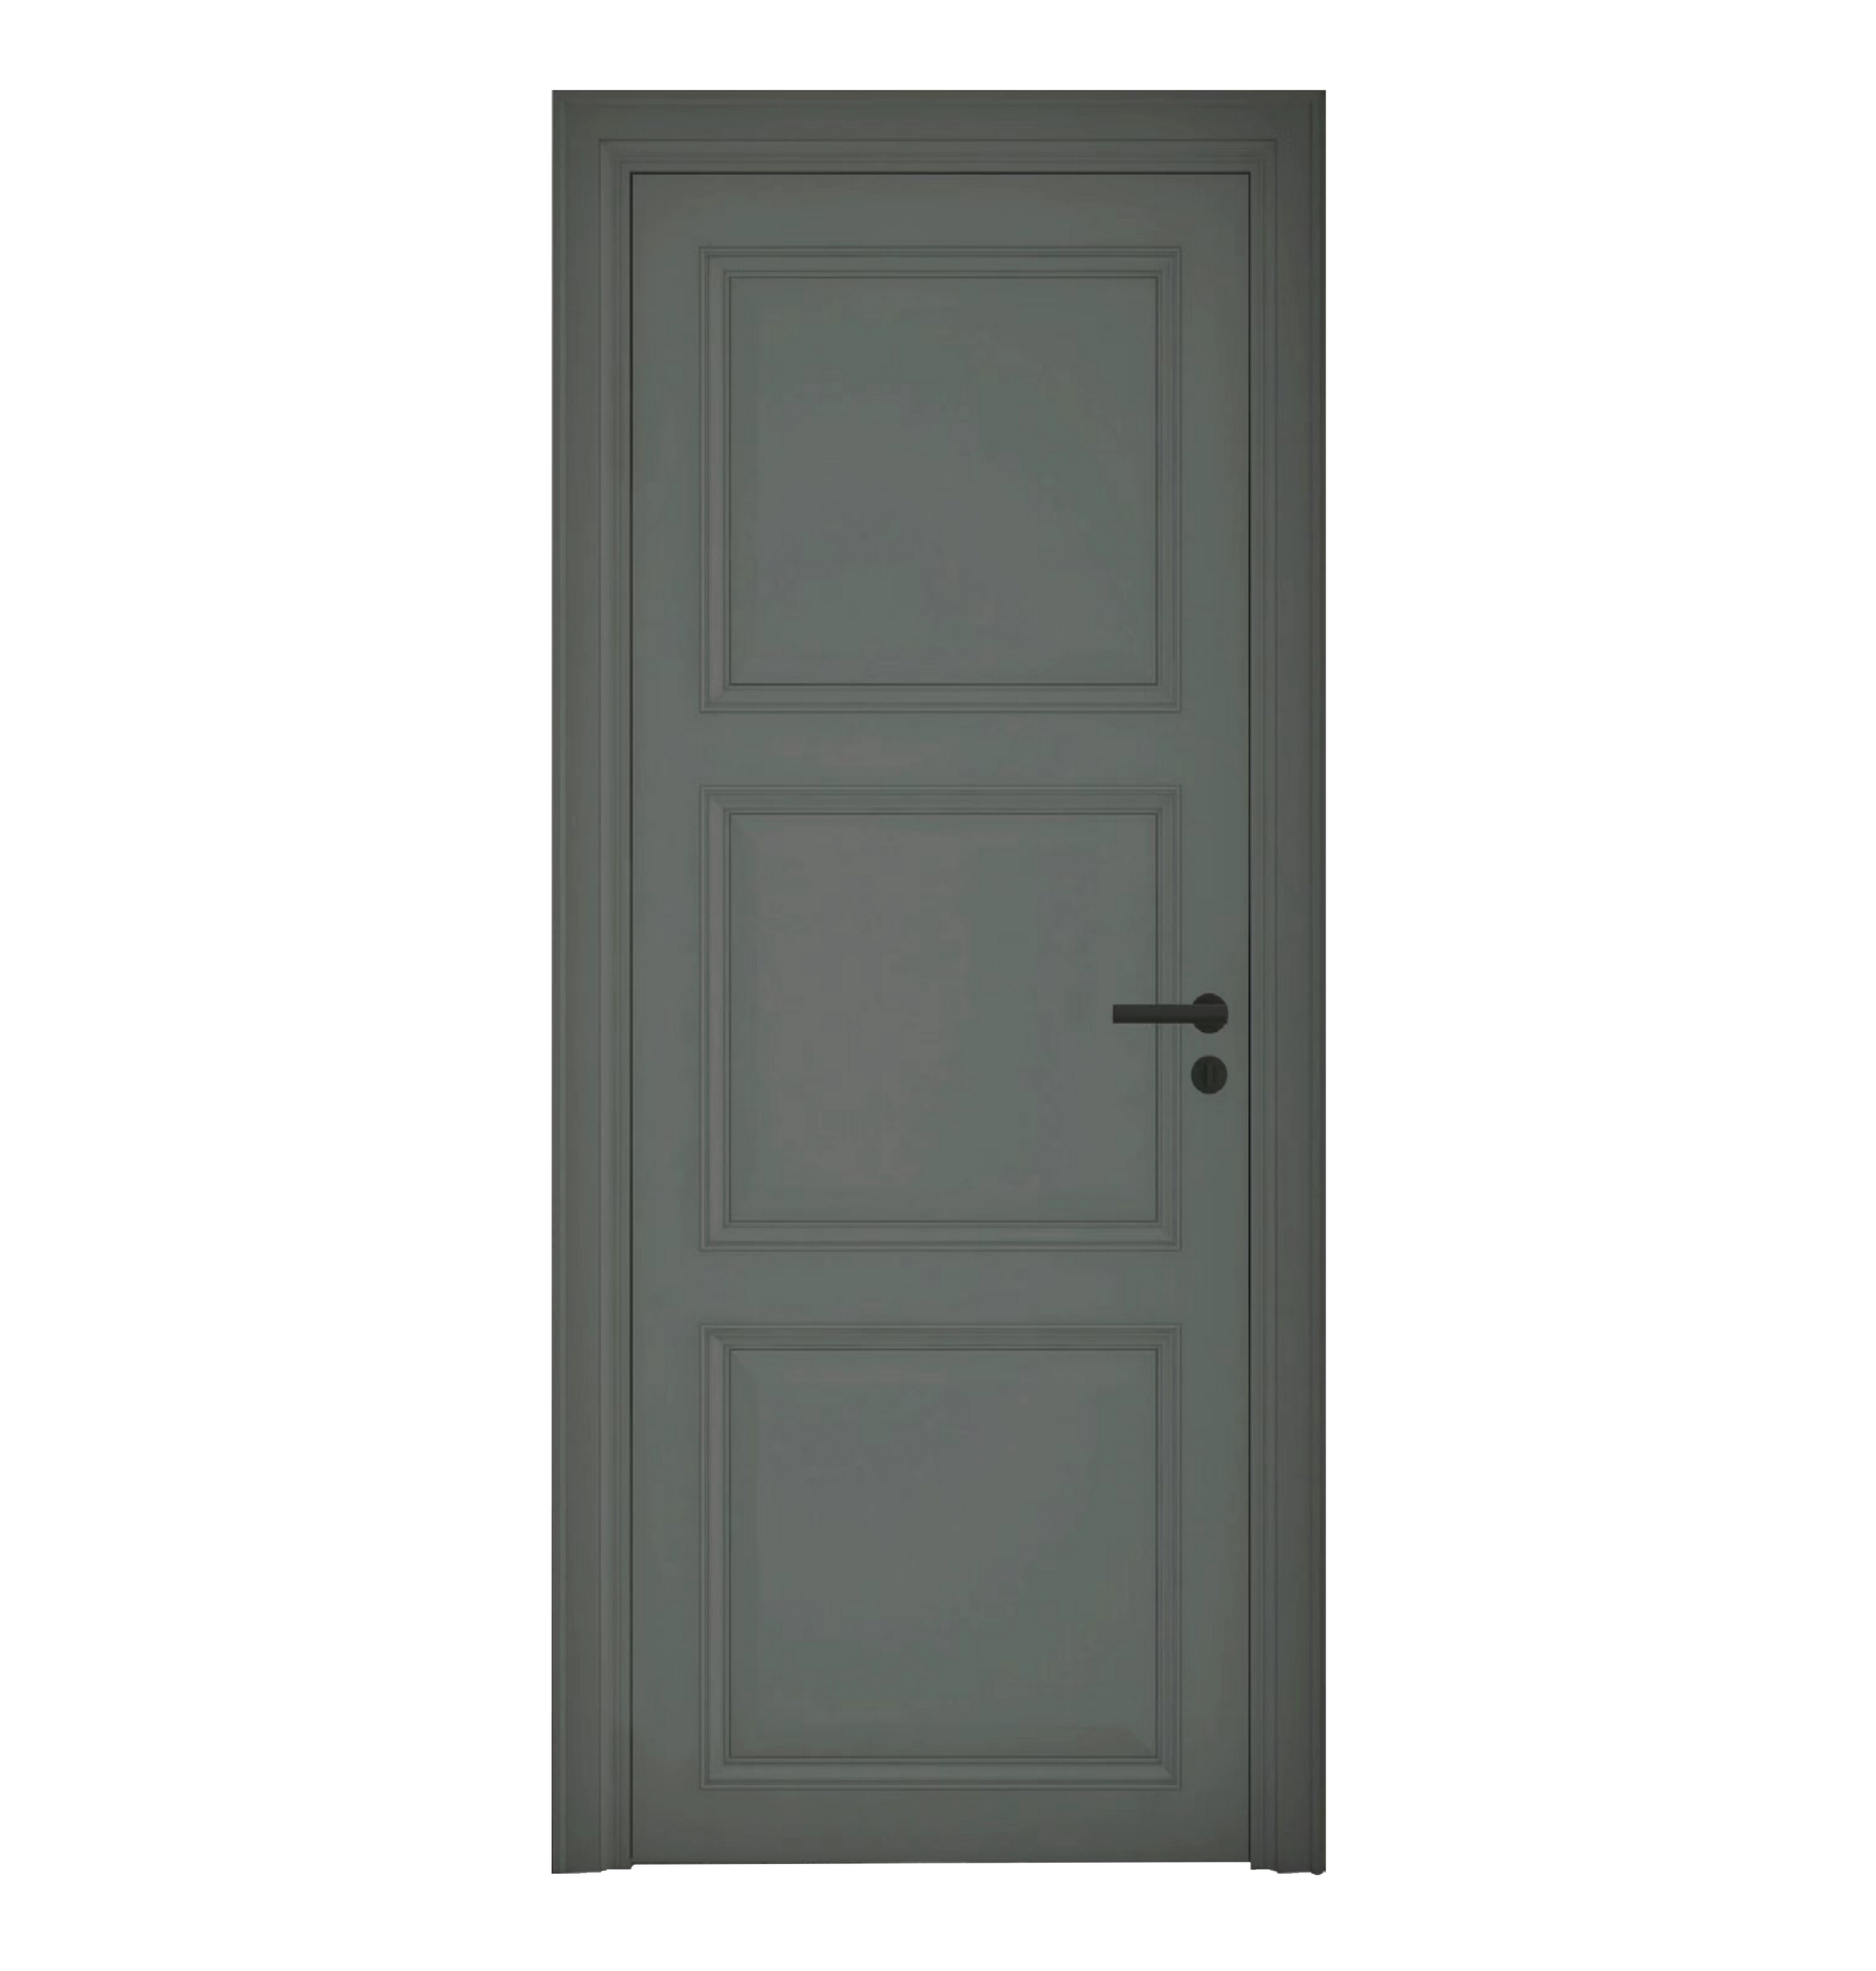 European Luxury House Front Modern Pivot Doors with Long Handle Wooden Entrance Door Modern Villa Main Door